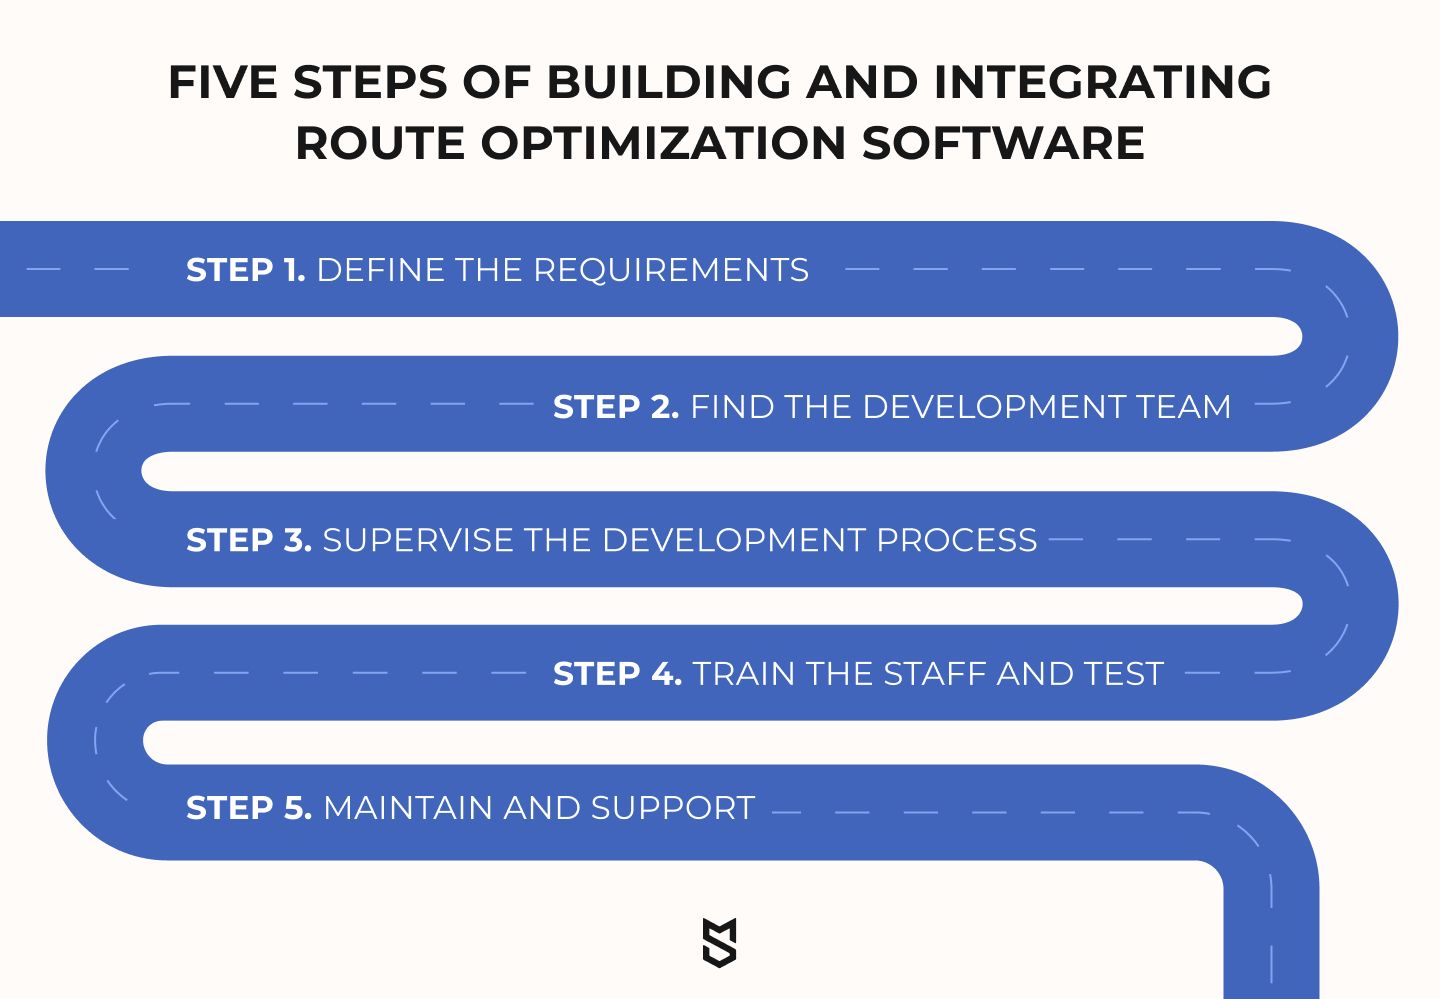 경로 최적화 소프트웨어 구축 및 통합의 5단계